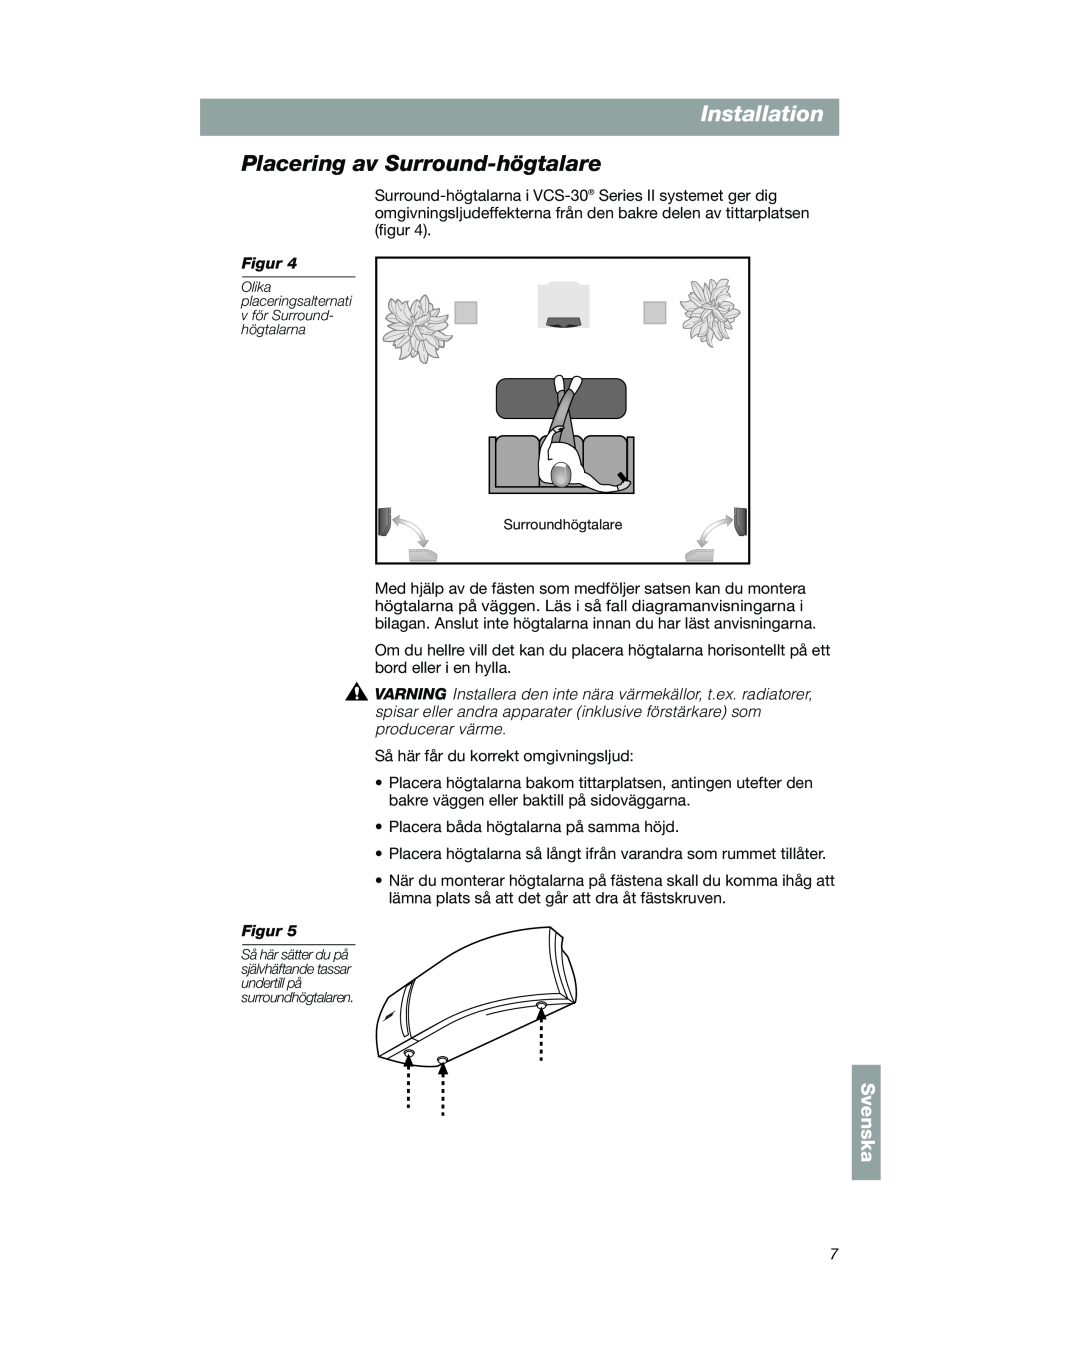 Bose VCS-10 manual Placering av Surround-högtalare, Installation, Svenska 